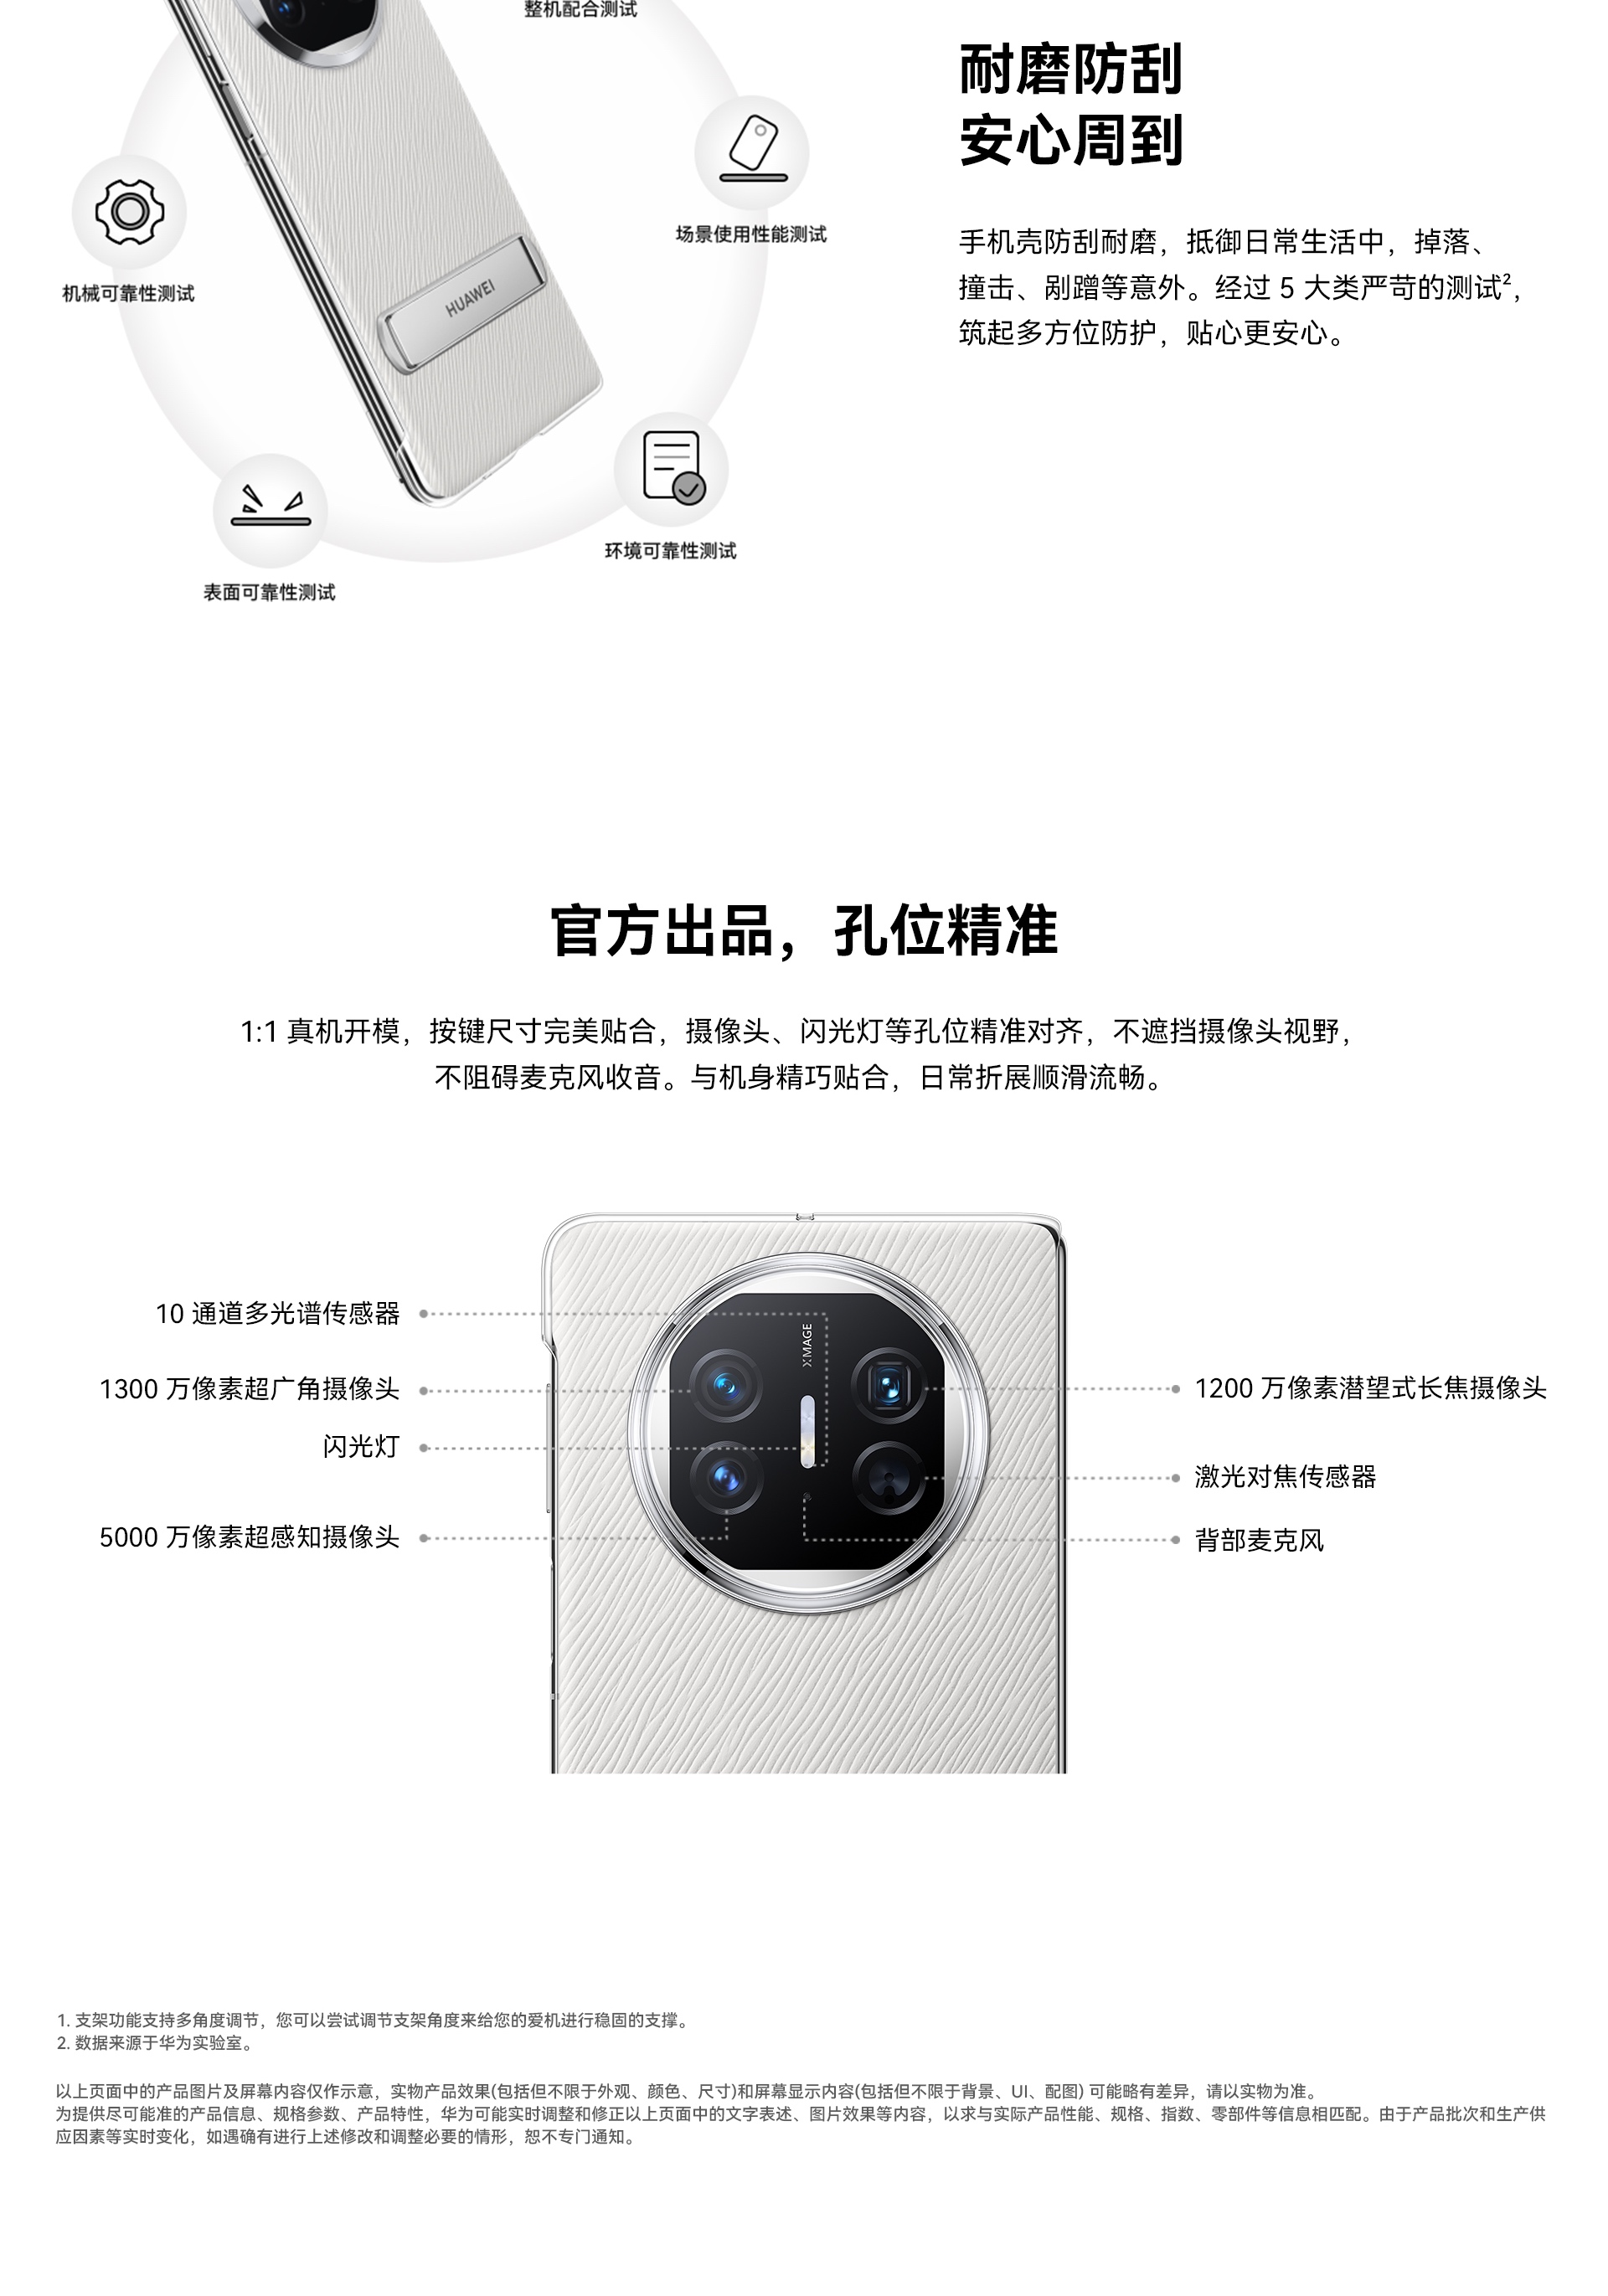 Huawei Mate X5 Stand PU Case